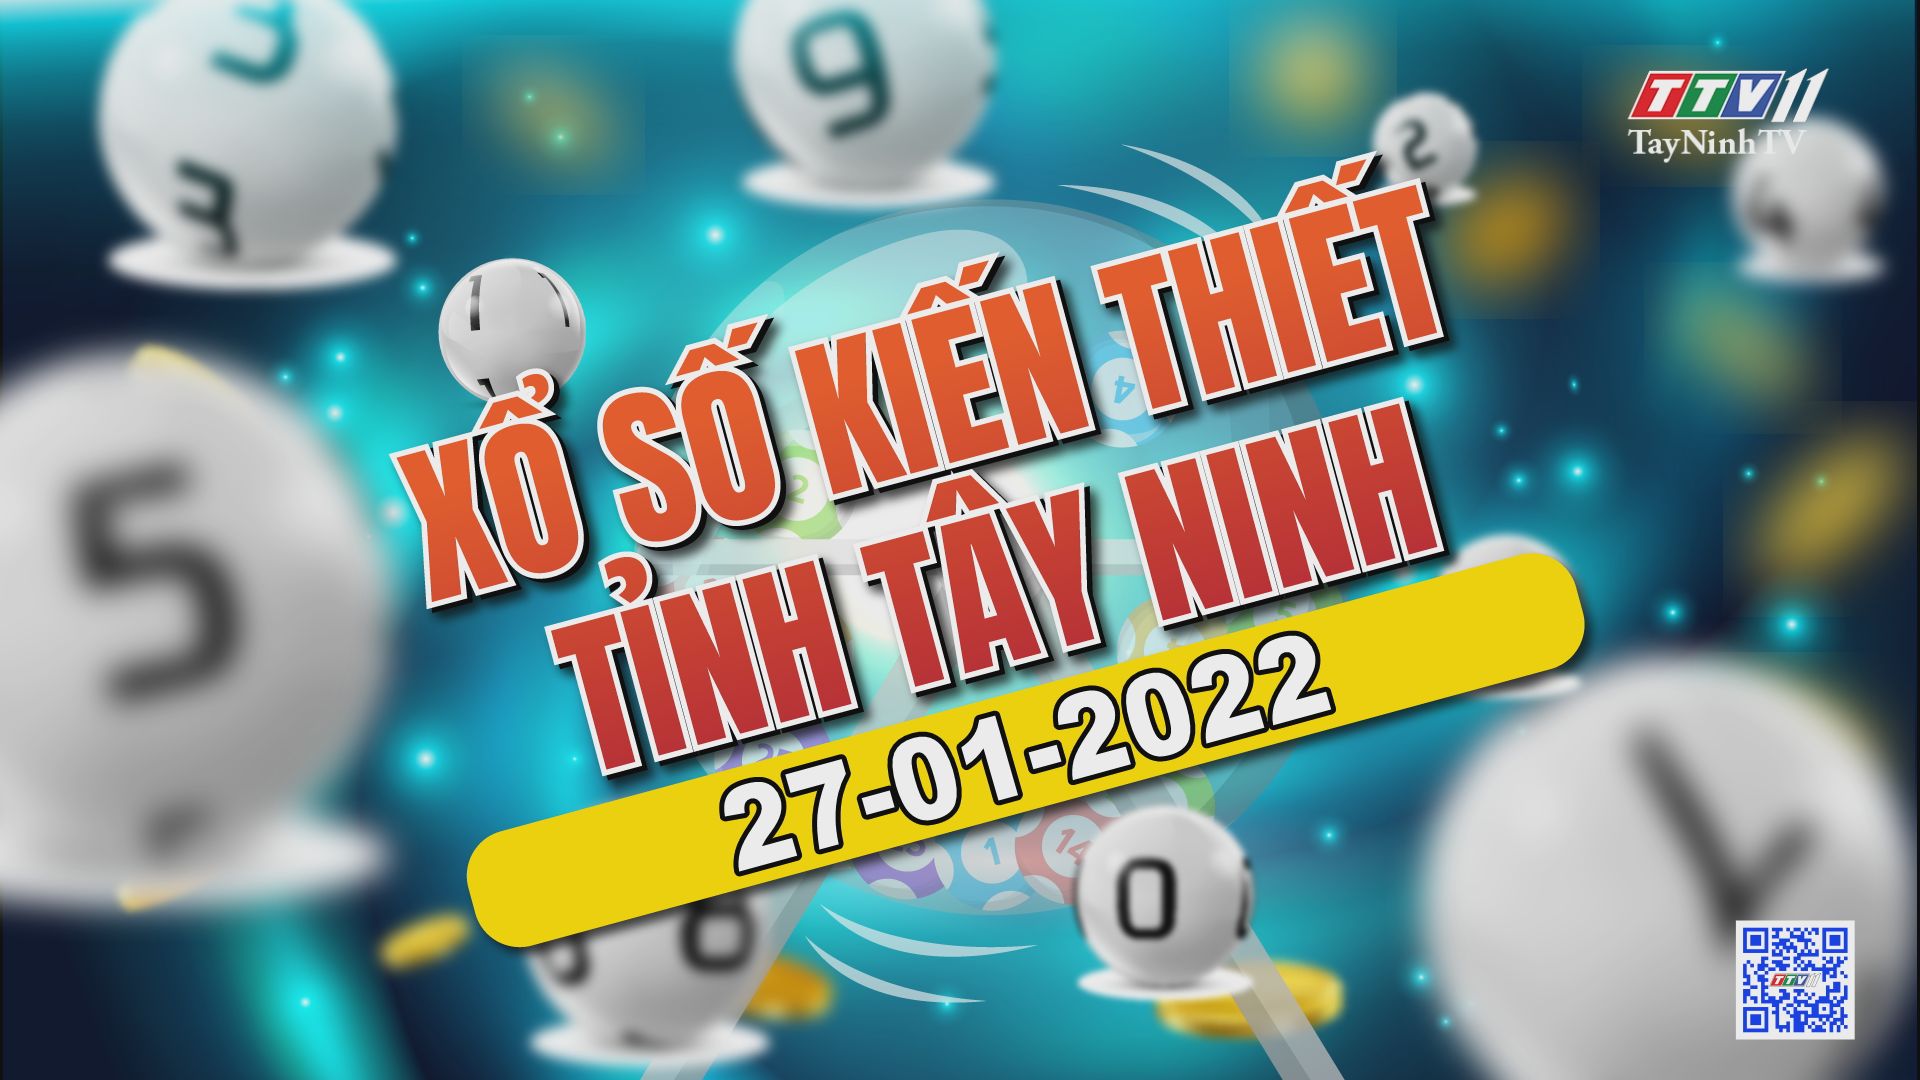 Trực tiếp Xổ số Tây Ninh ngày 27-01-2022 | TayNinhTVAudio